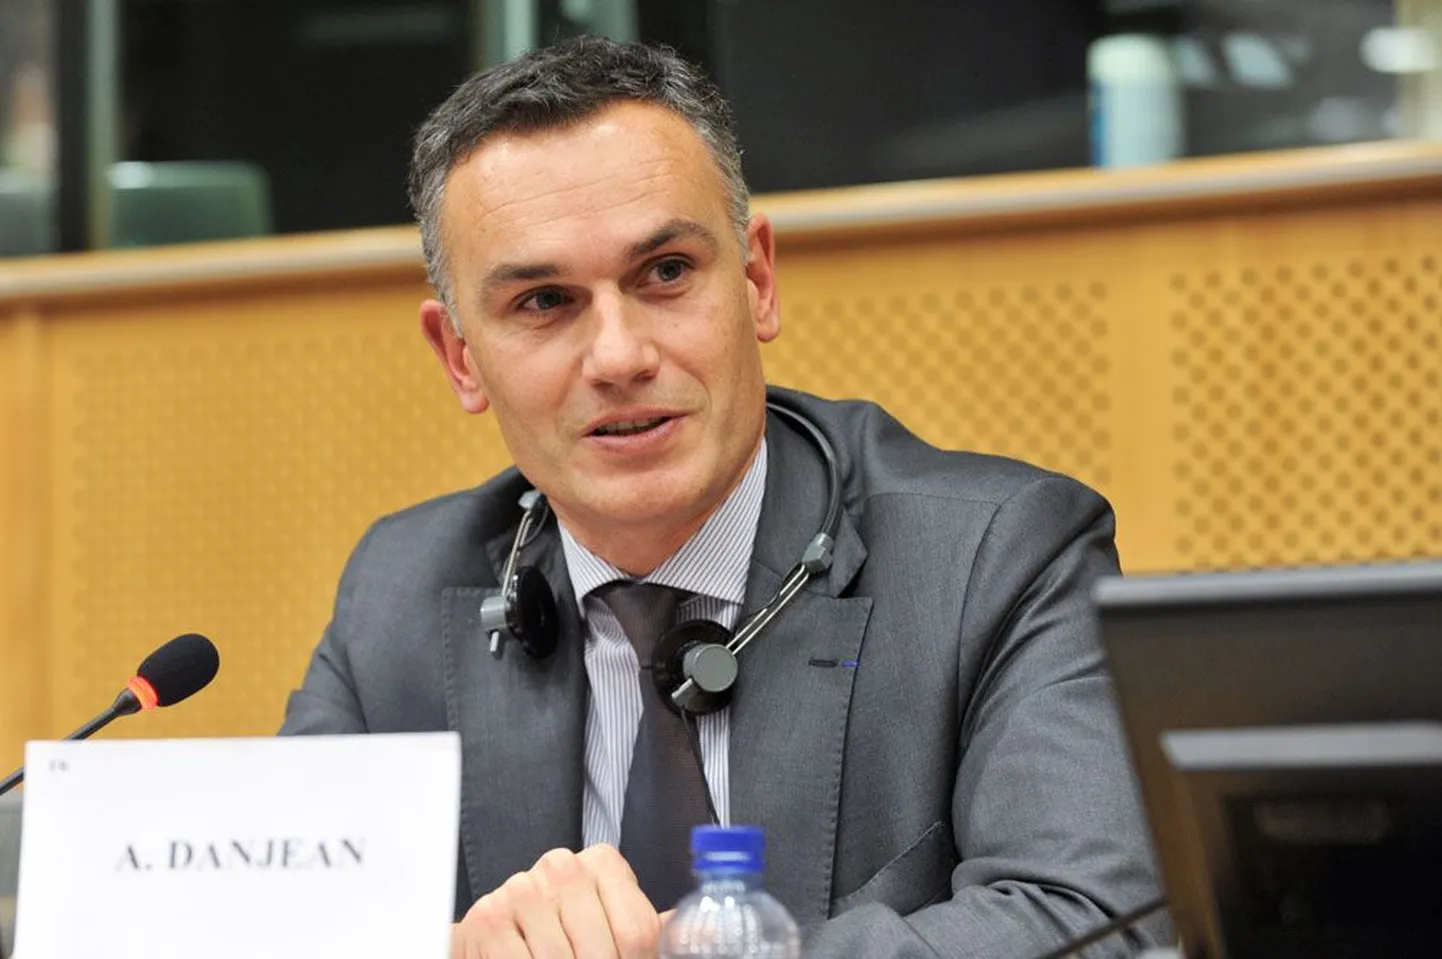 Arnaud Danjean usub, et ELi maad asuvad majandusliku kitsikuse sunnil peagi rohkem ühiselt kaitsepoliitikat ajama.